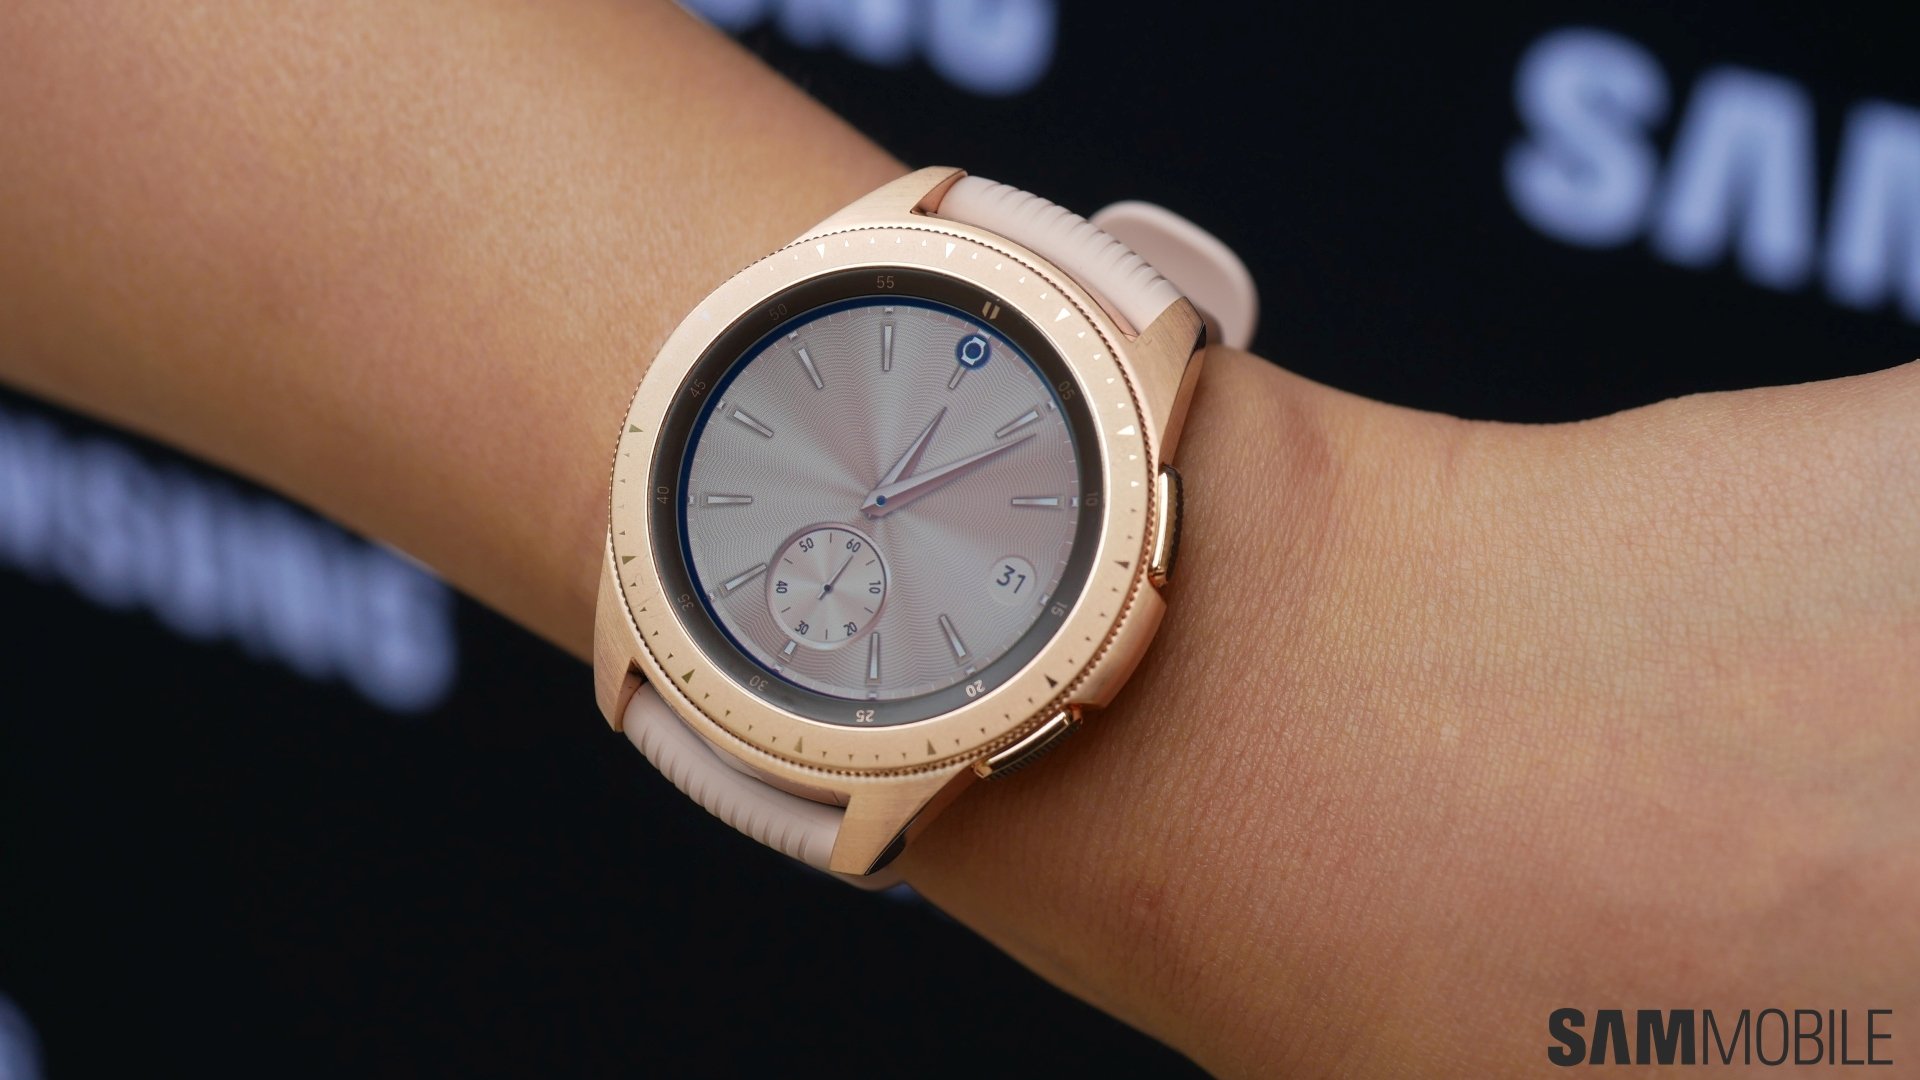 Galaxy watch золото. Samsung Galaxy watch 42mm. Samsung Galaxy watch 42. Samsung Galaxy watch 42мм. Смарт часы Samsung Galaxy watch 42mm.